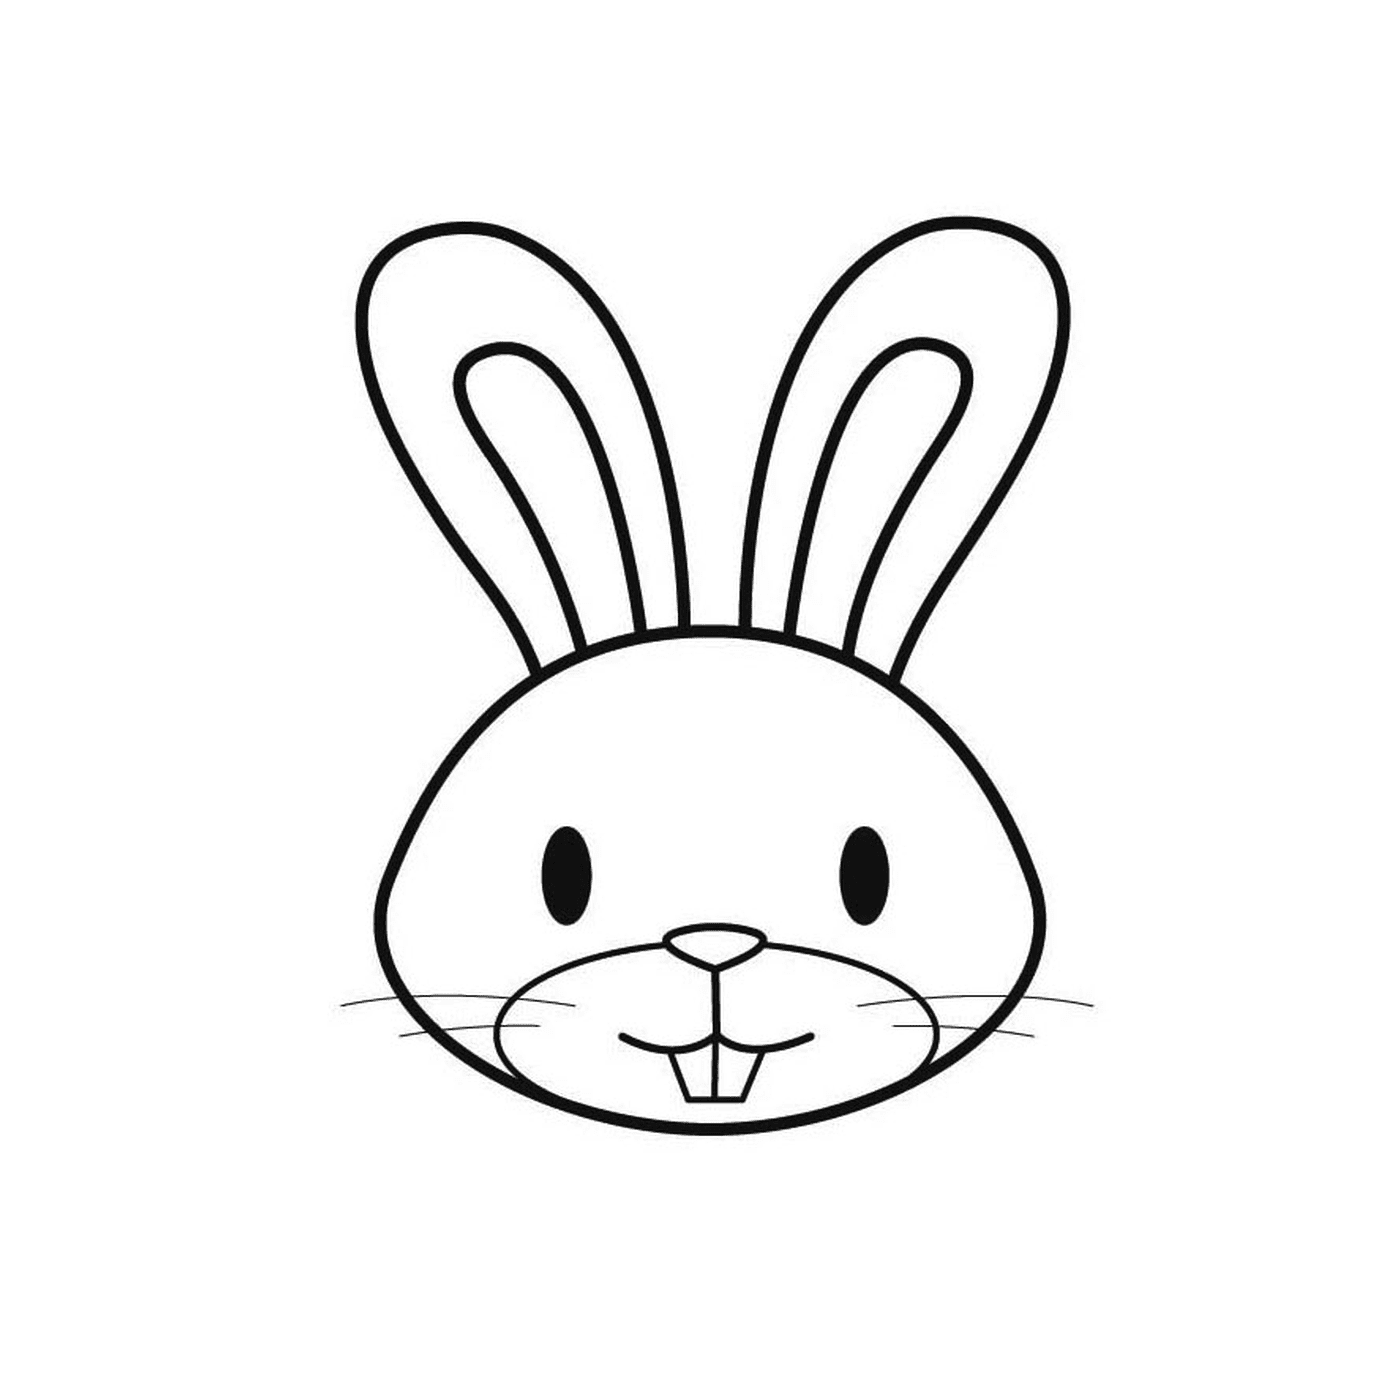  Una cara de conejo para Pascua 